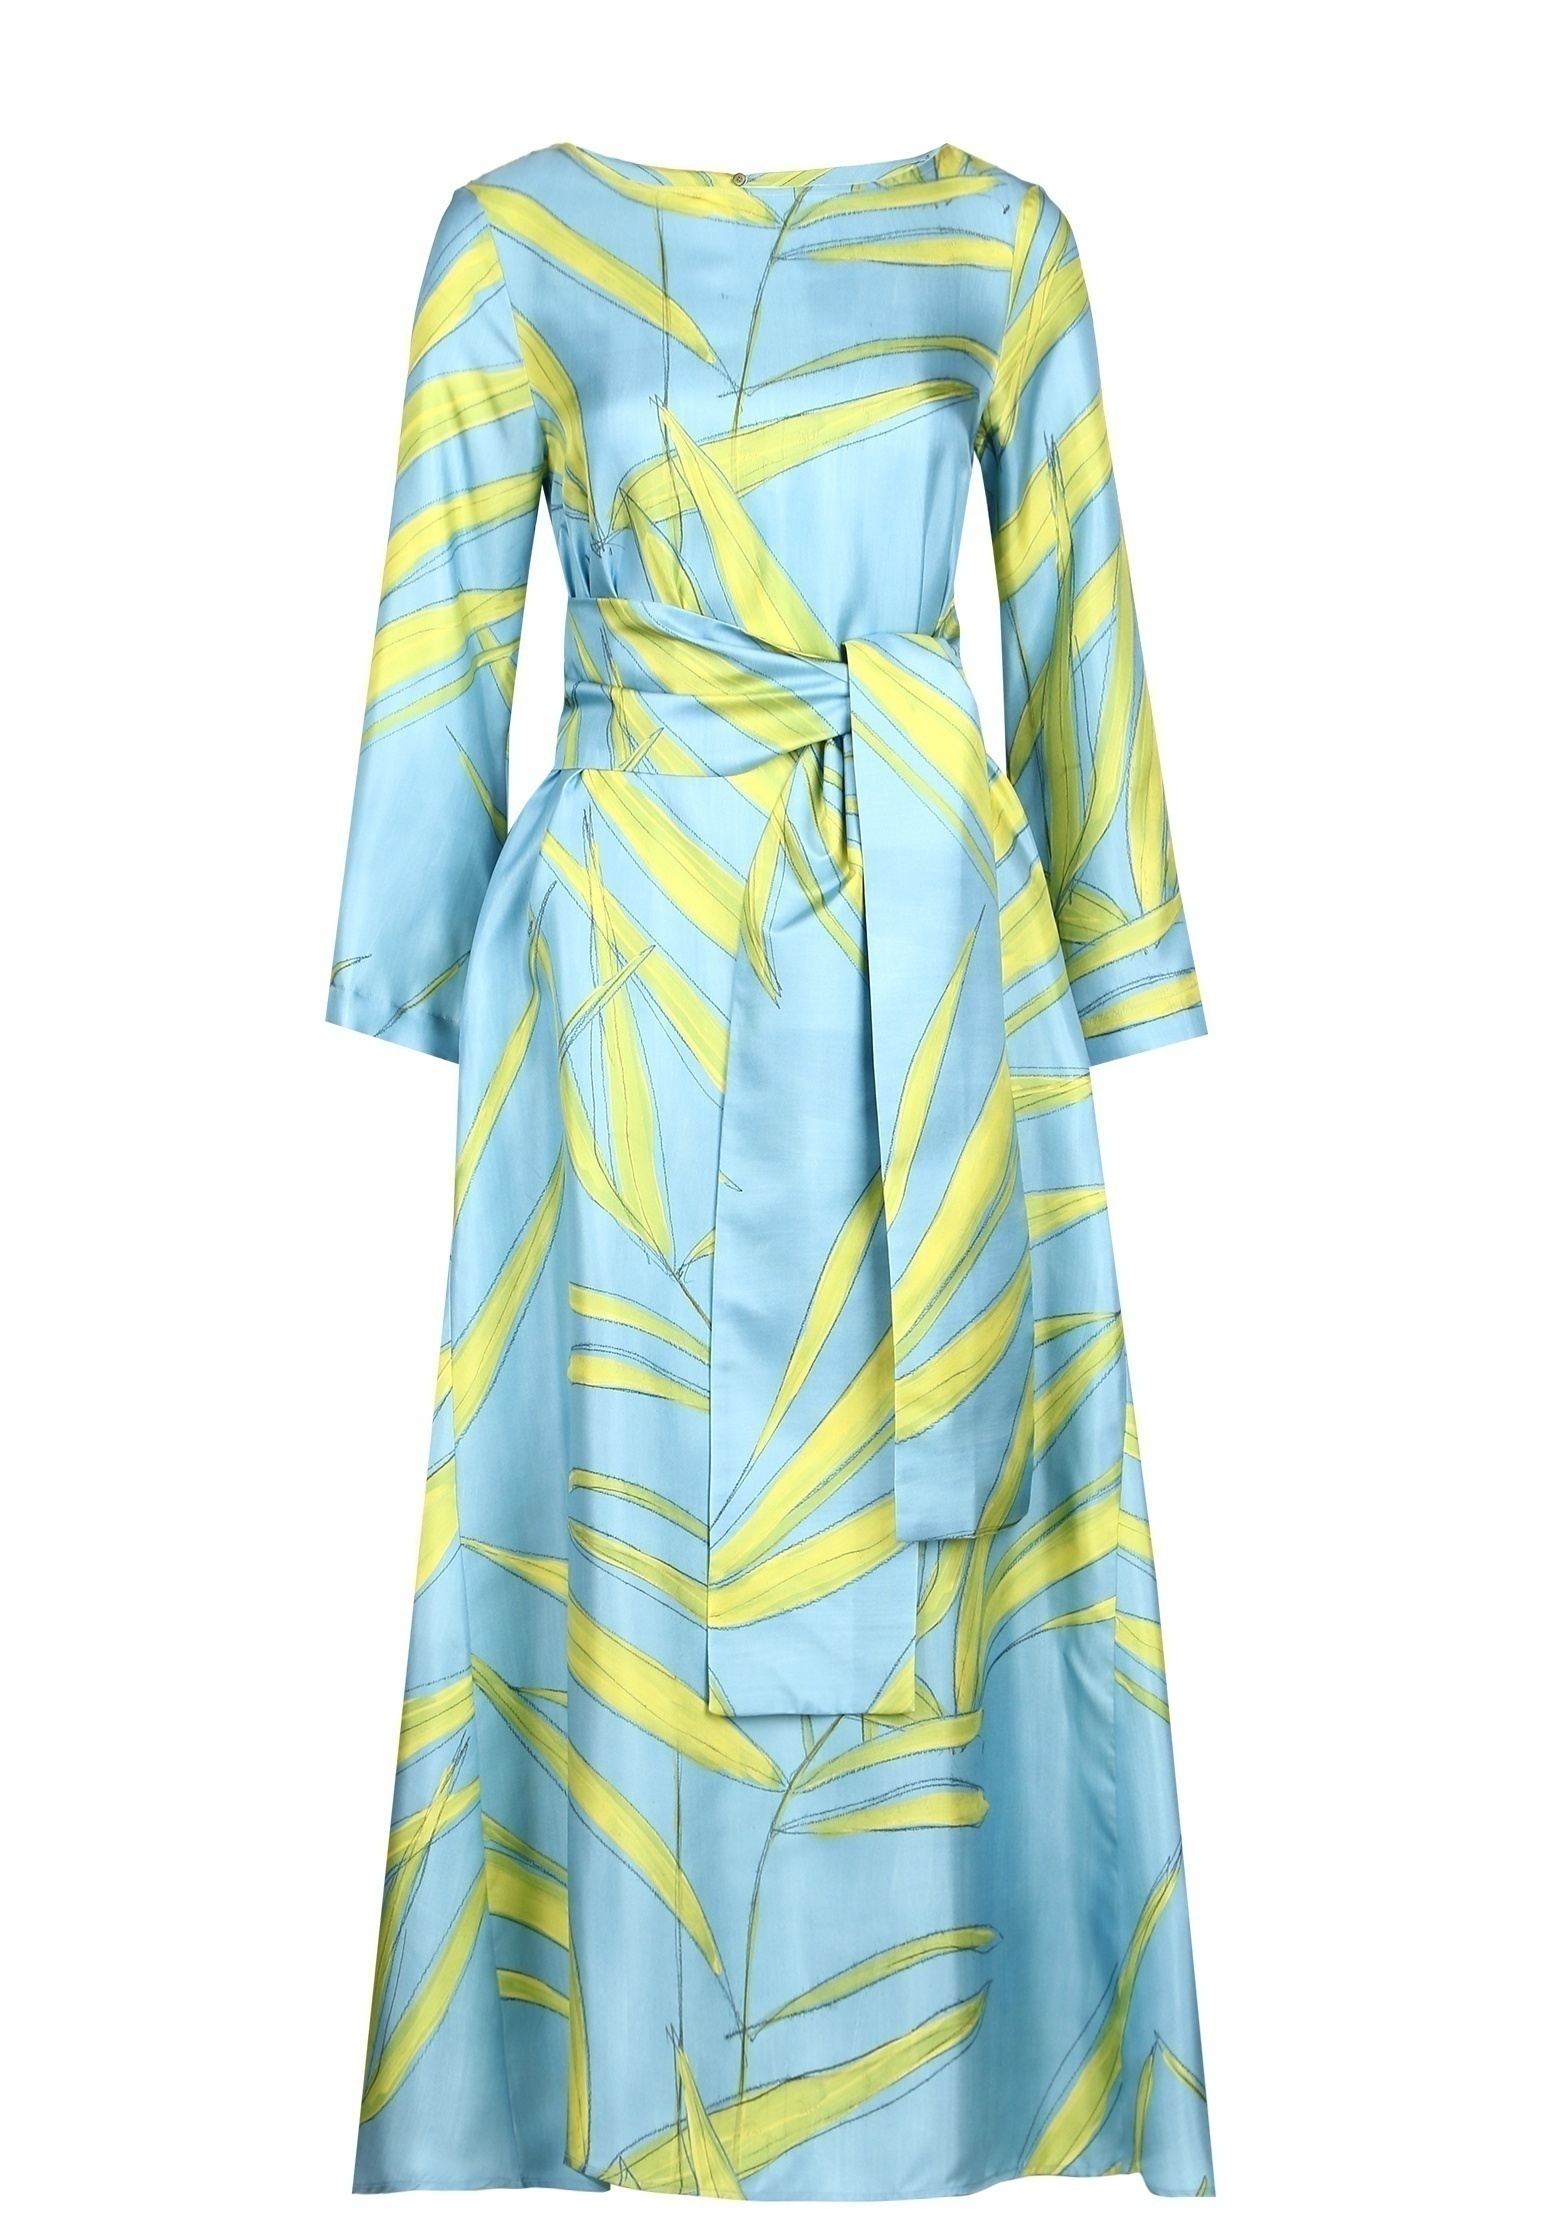 Платье женское Maison Co.go 142904 голубое 42 IT